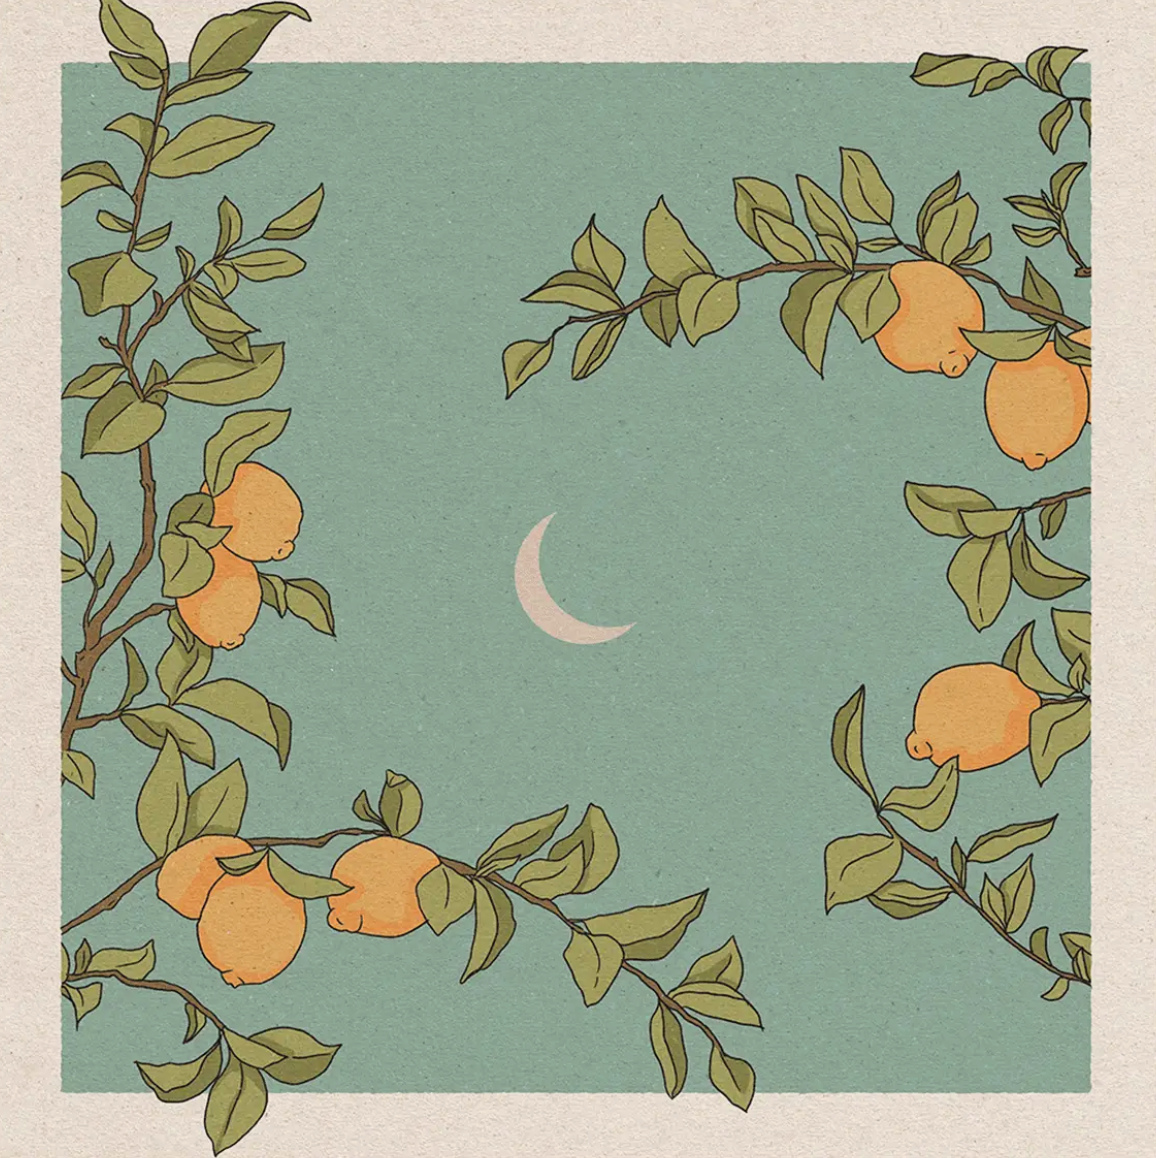 Lemon Tree Print